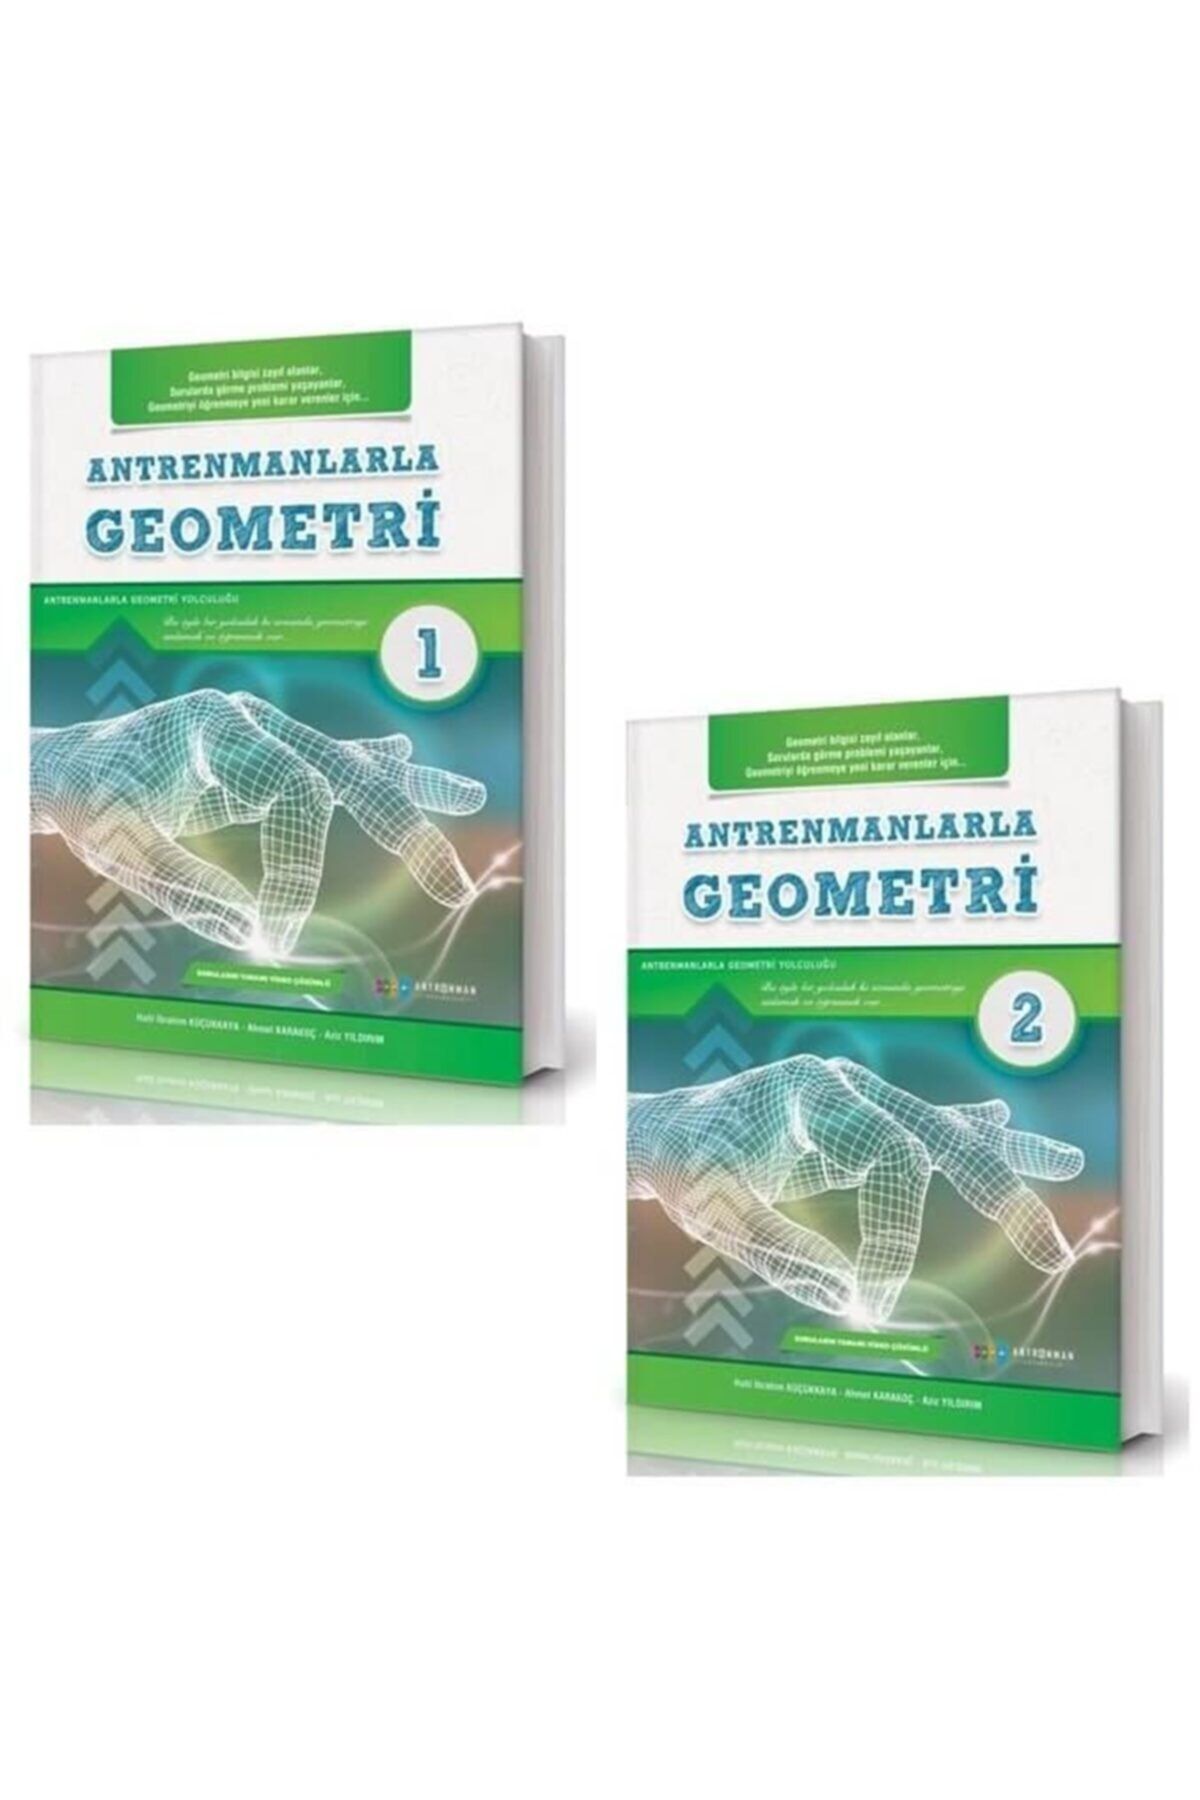 Antrenman Yayıncılık Antrenmanlarla Geometri 1-2 Set 2 Kitap